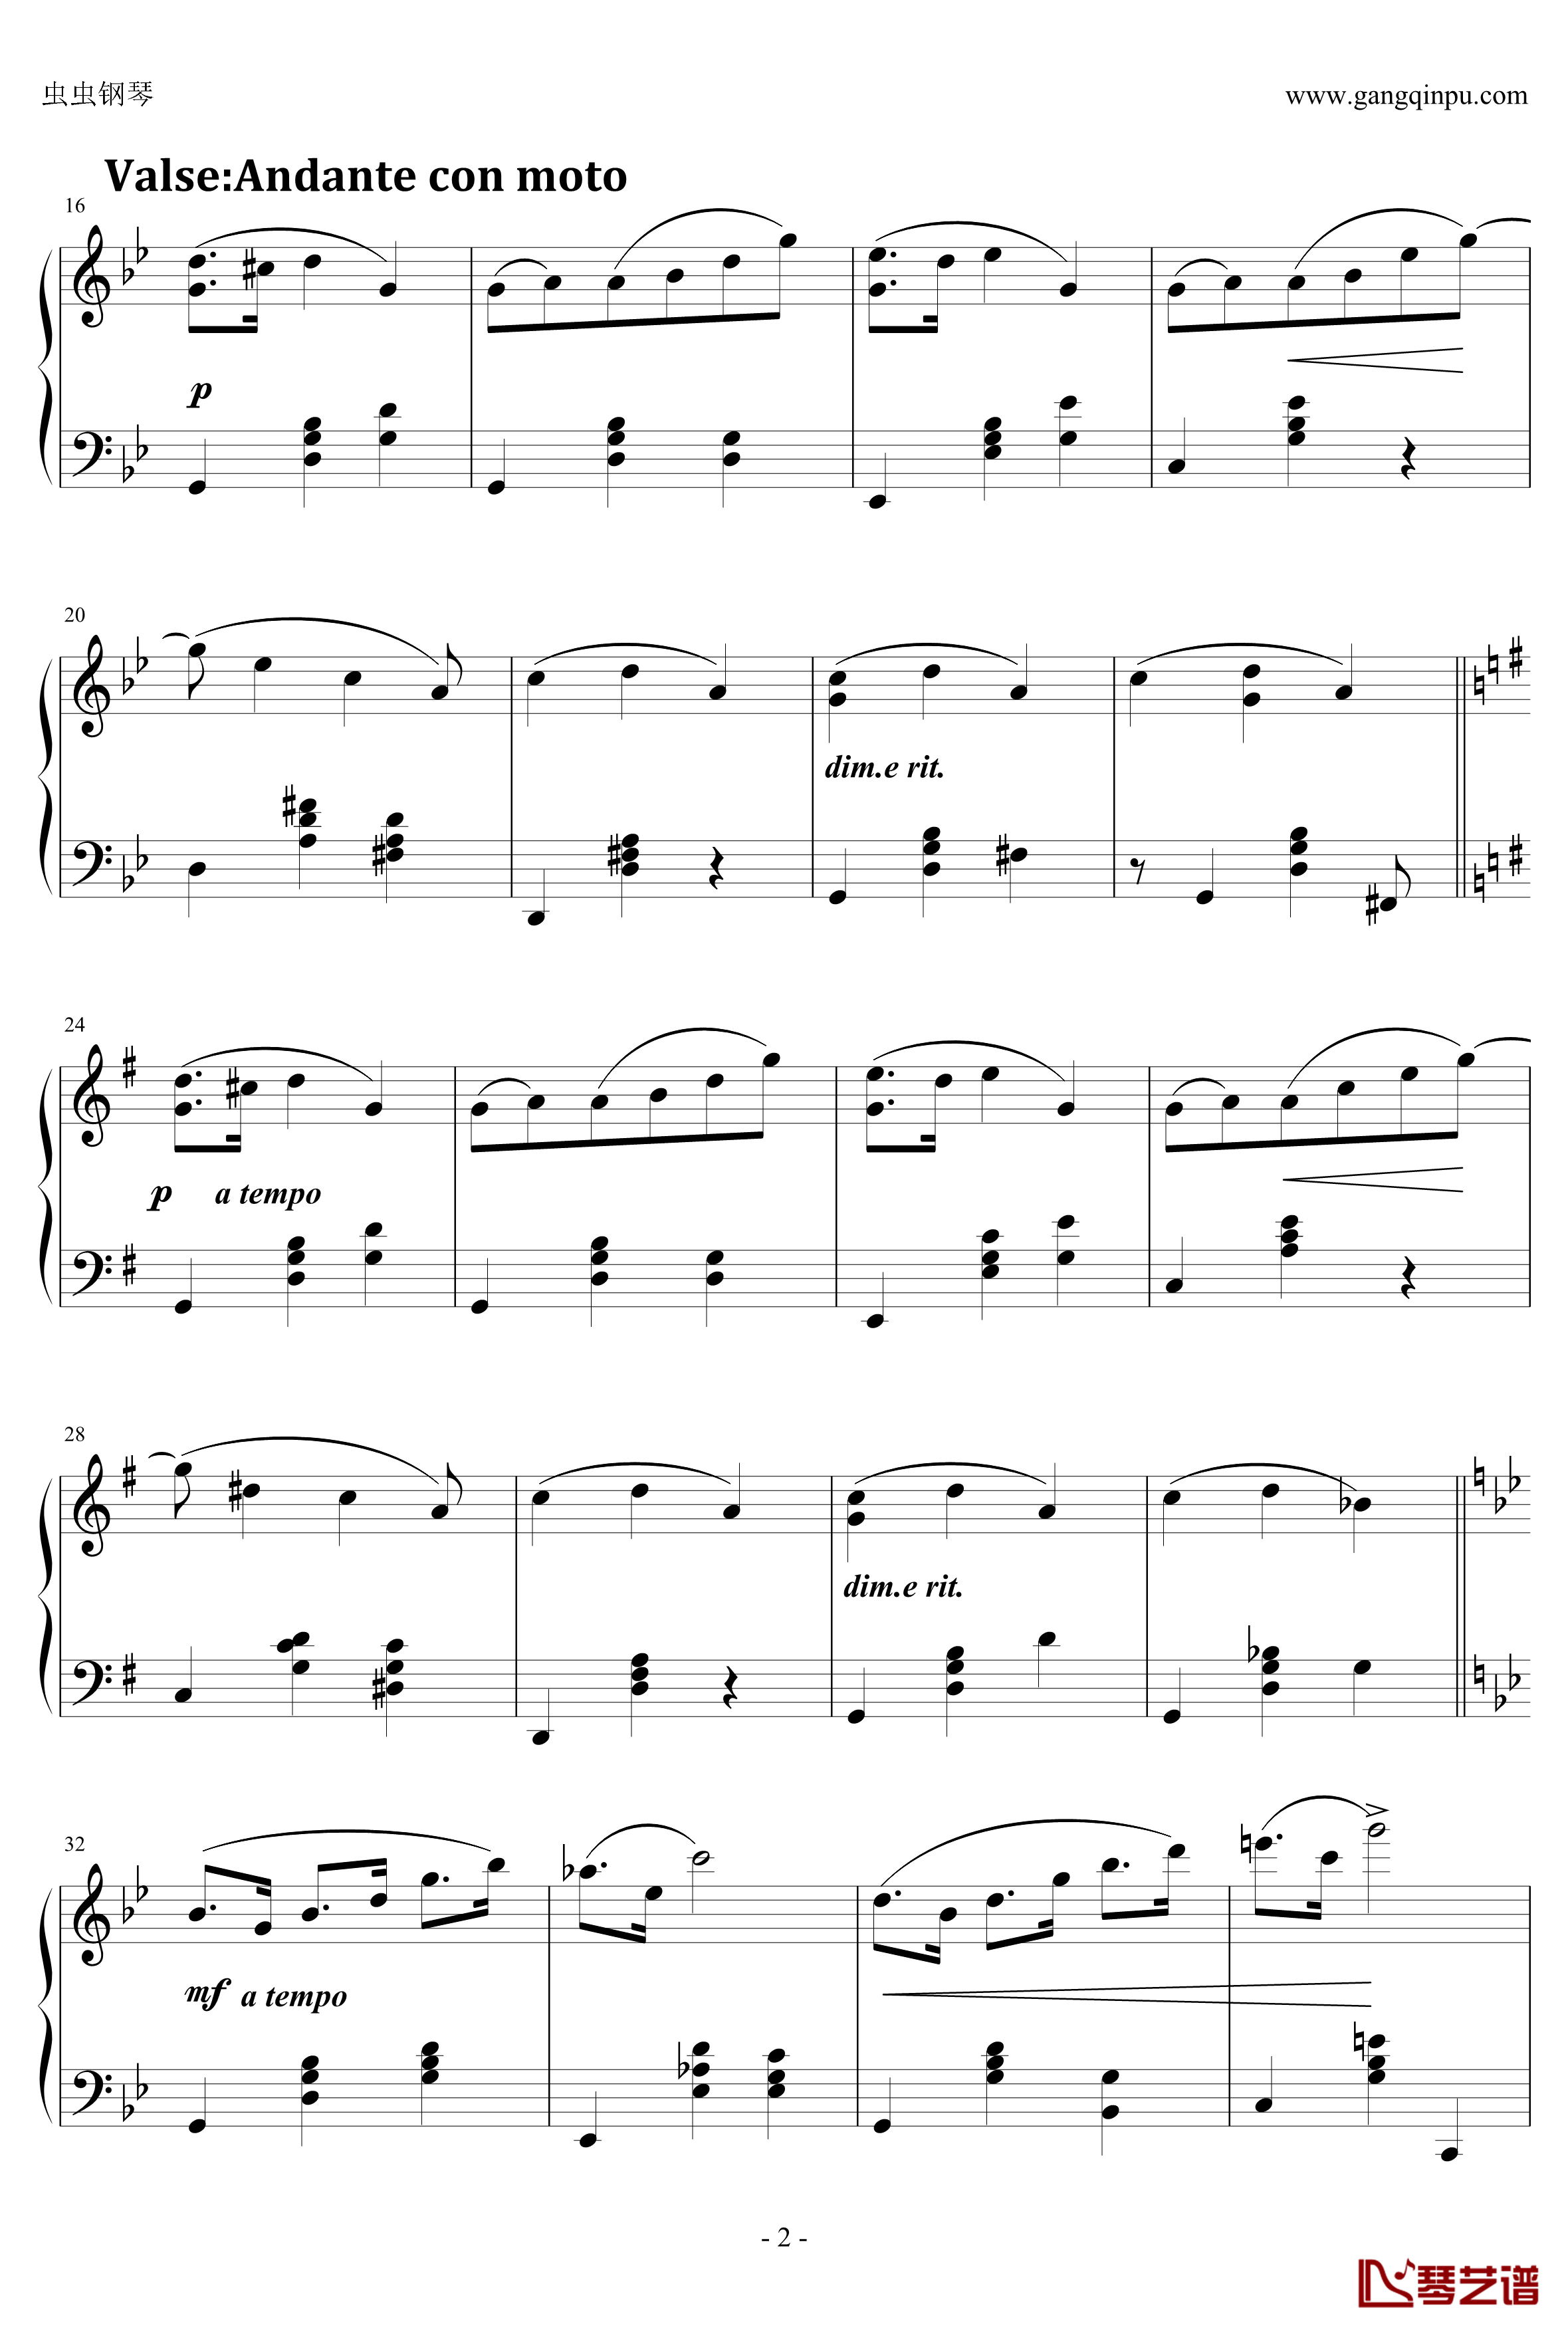 C大调小奏鸣曲钢琴谱 第三乐章-天籁传声2